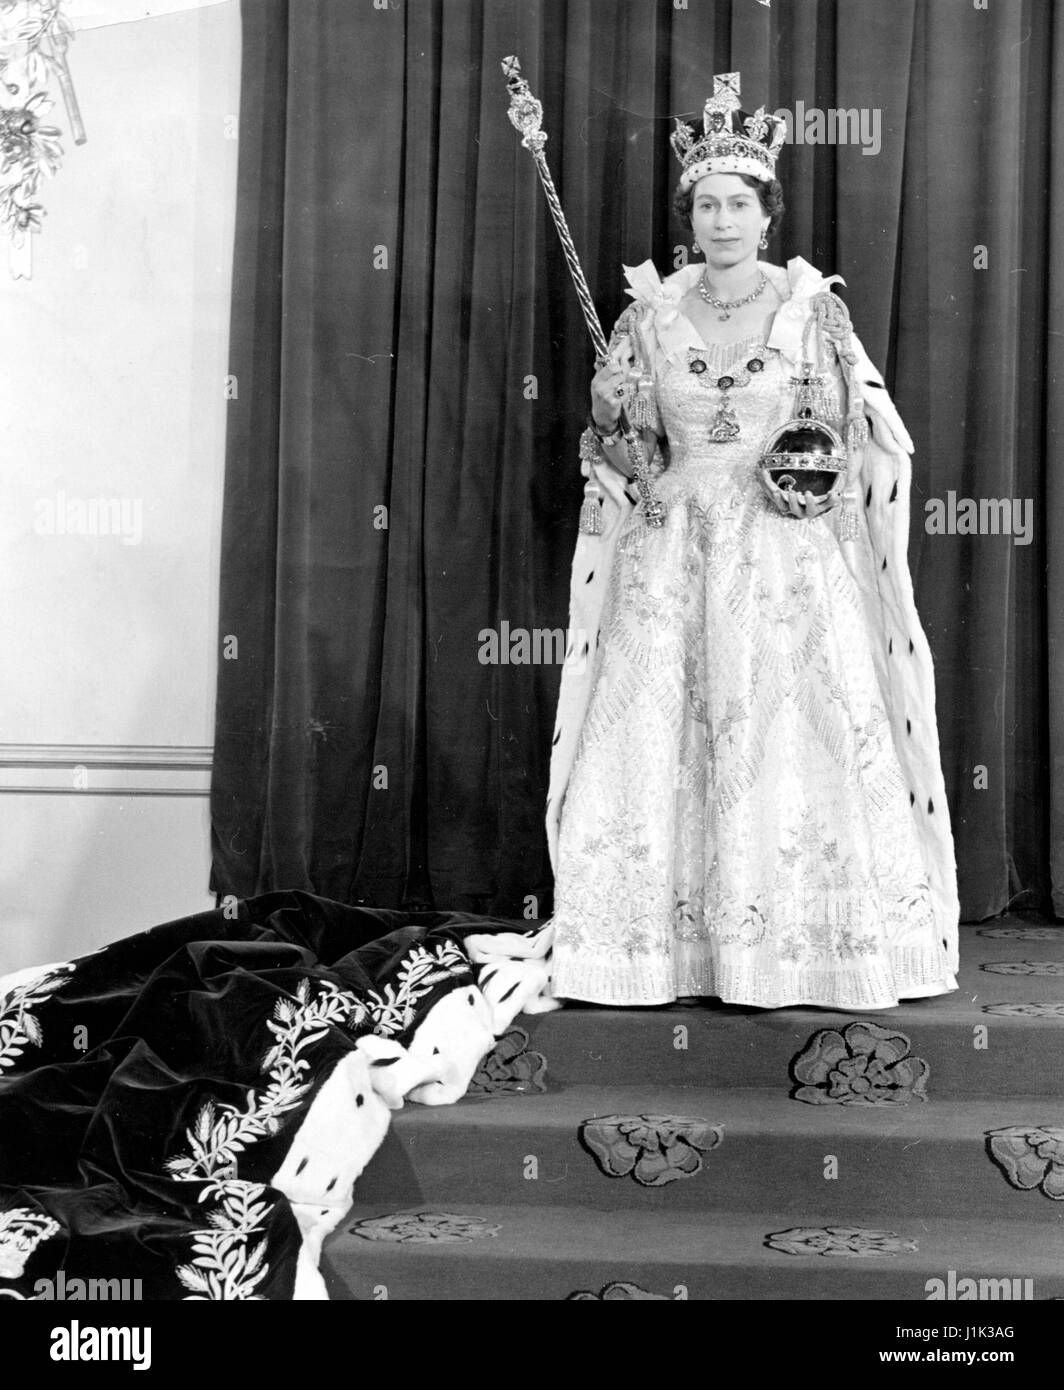 Photo d'archives. Apr 21, 2017. La Grande-Bretagne LA REINE ELIZABETH, la plus ancienne et plus ancien monarque régnant, célèbre son 91e anniversaire. Sur la photo : June 2, 1953 - Londres, Angleterre, Royaume-Uni - LA REINE ELIZABETH II a été couronnée lors d'une cérémonie de couronnement dans l'abbaye de Westminster à Londres. Devant plus de 8 000 personnes, dont les premiers ministres et les chefs d'état de autour de la Communauté, elle a pris le Serment du Couronnement et est désormais lié à servir son peuple et de maintenir les lois de Dieu. Crédit : KEYSTONE Photos USA/ZUMAPRESS.com/Alamy Live News Banque D'Images